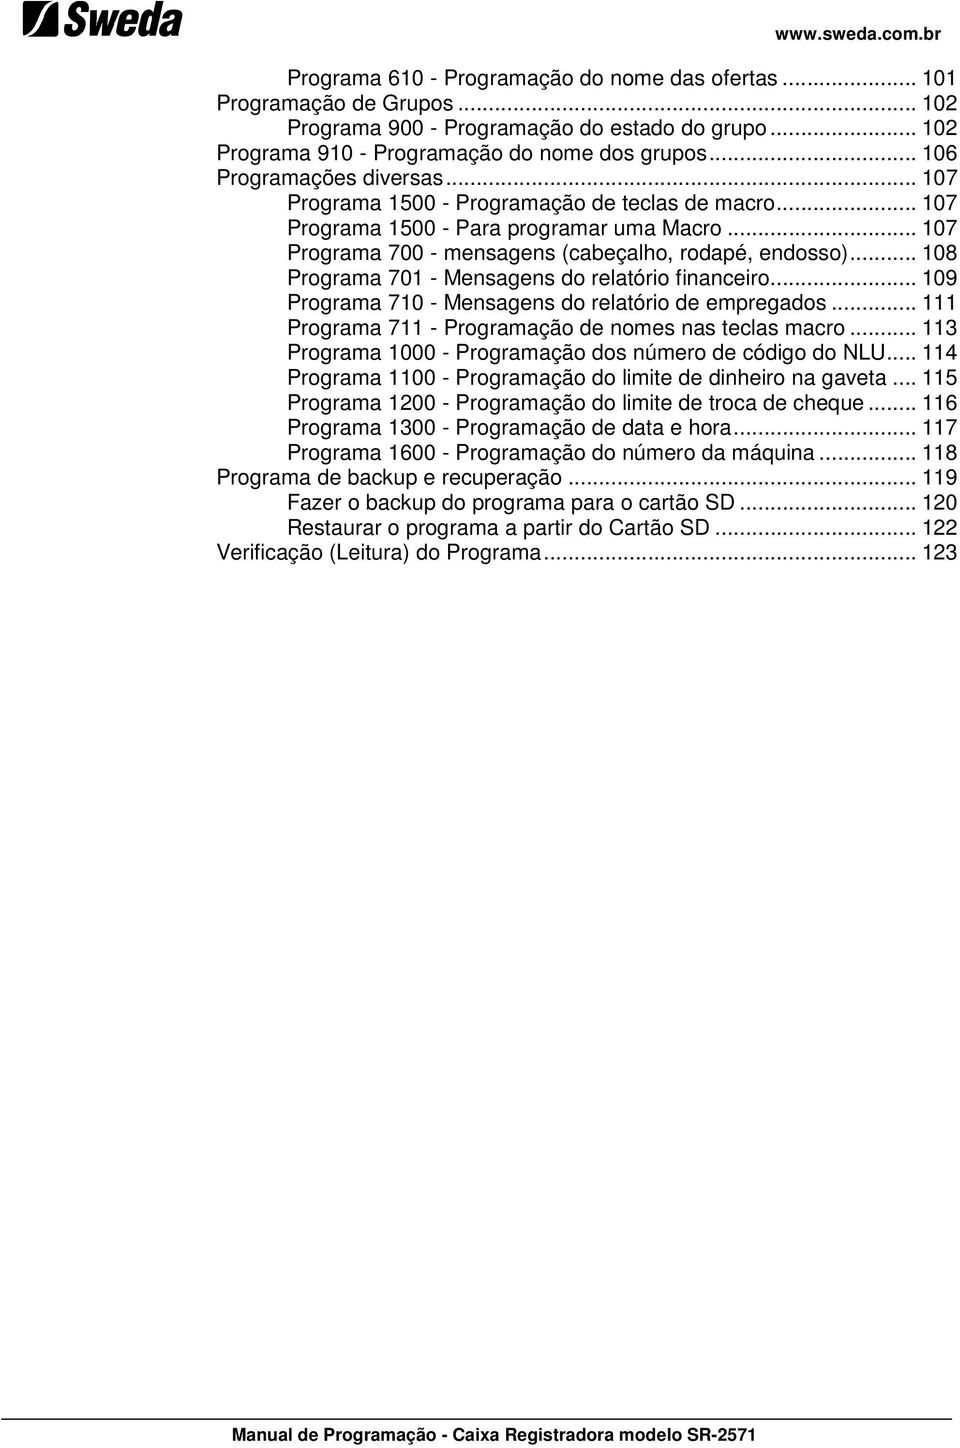 .. 108 Programa 701 - Mensagens do relatório financeiro... 109 Programa 710 - Mensagens do relatório de empregados... 111 Programa 711 - Programação de nomes nas teclas macro.